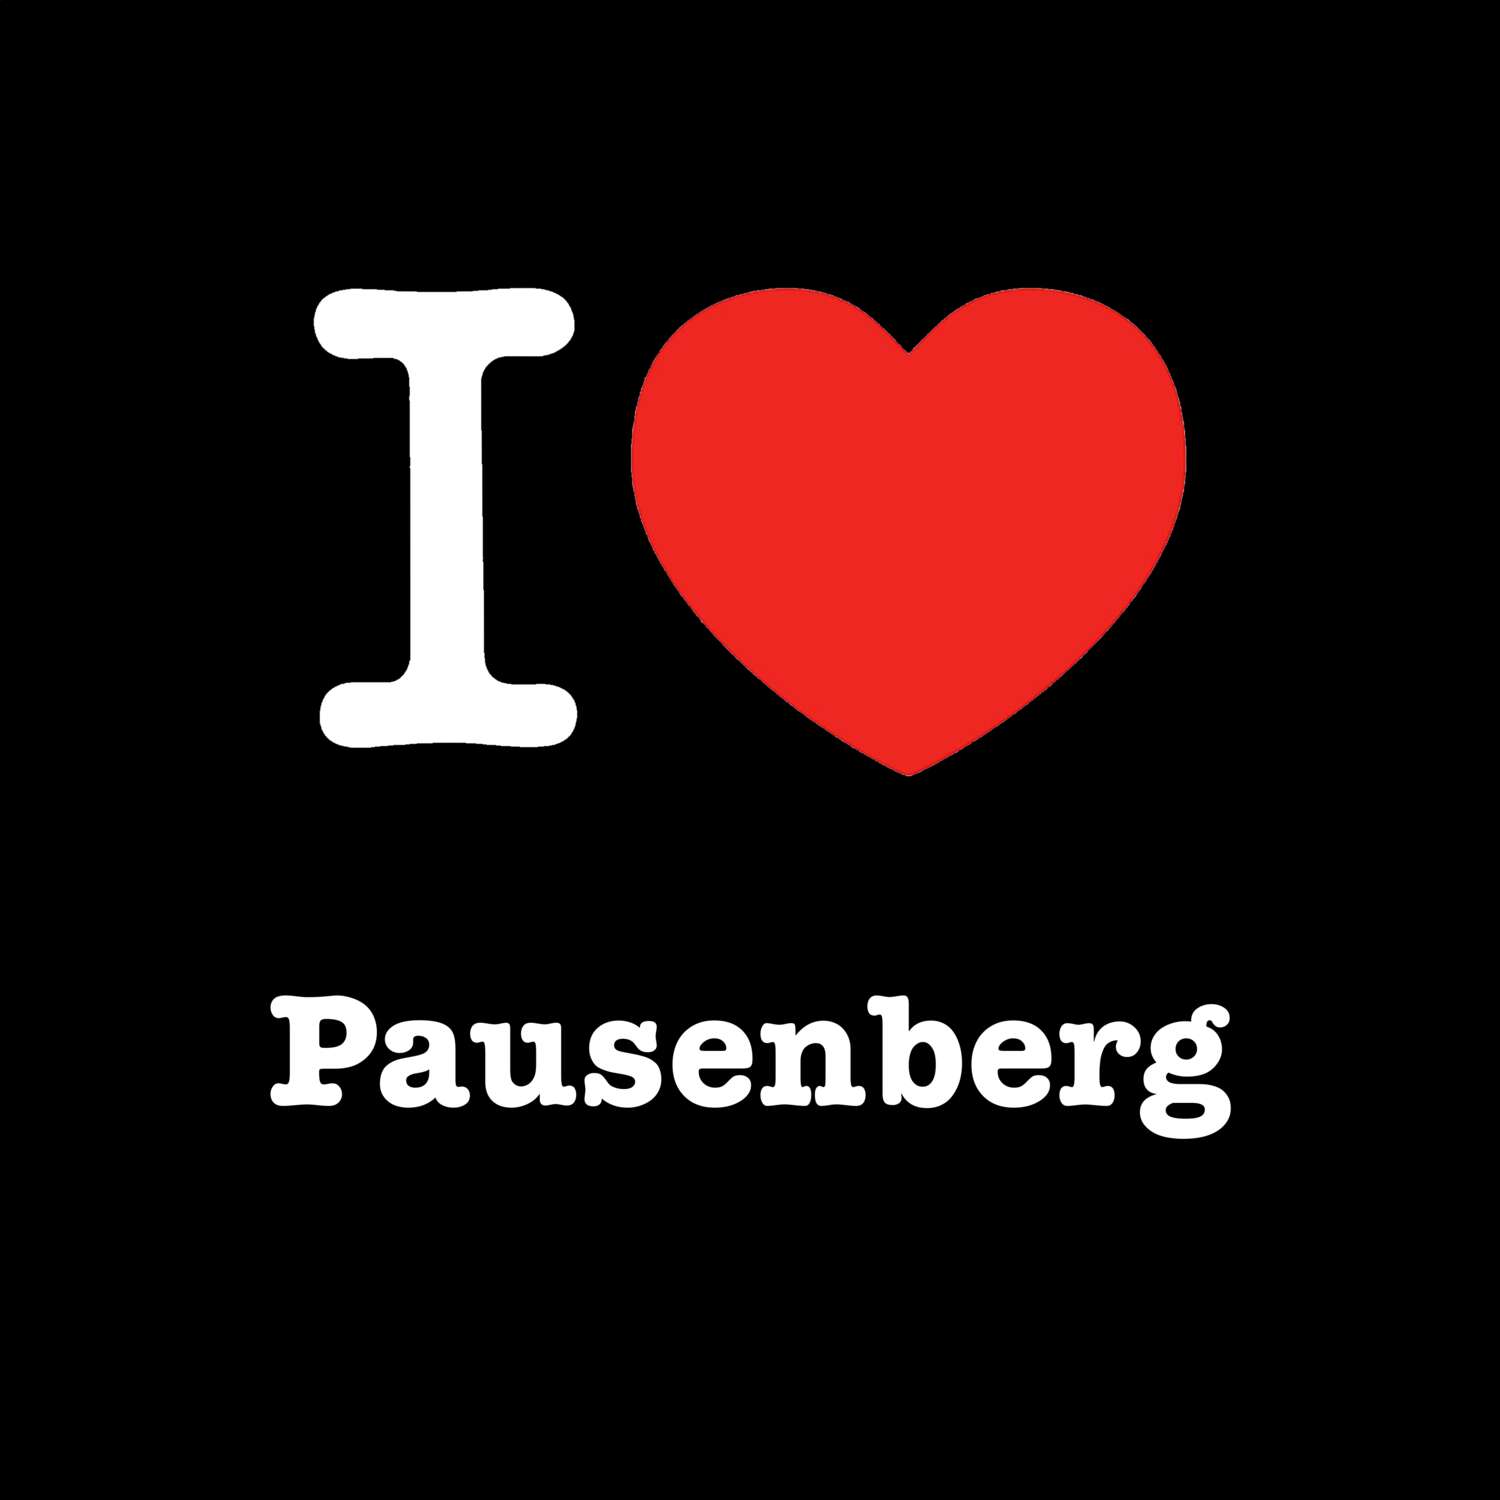 Pausenberg T-Shirt »I love«